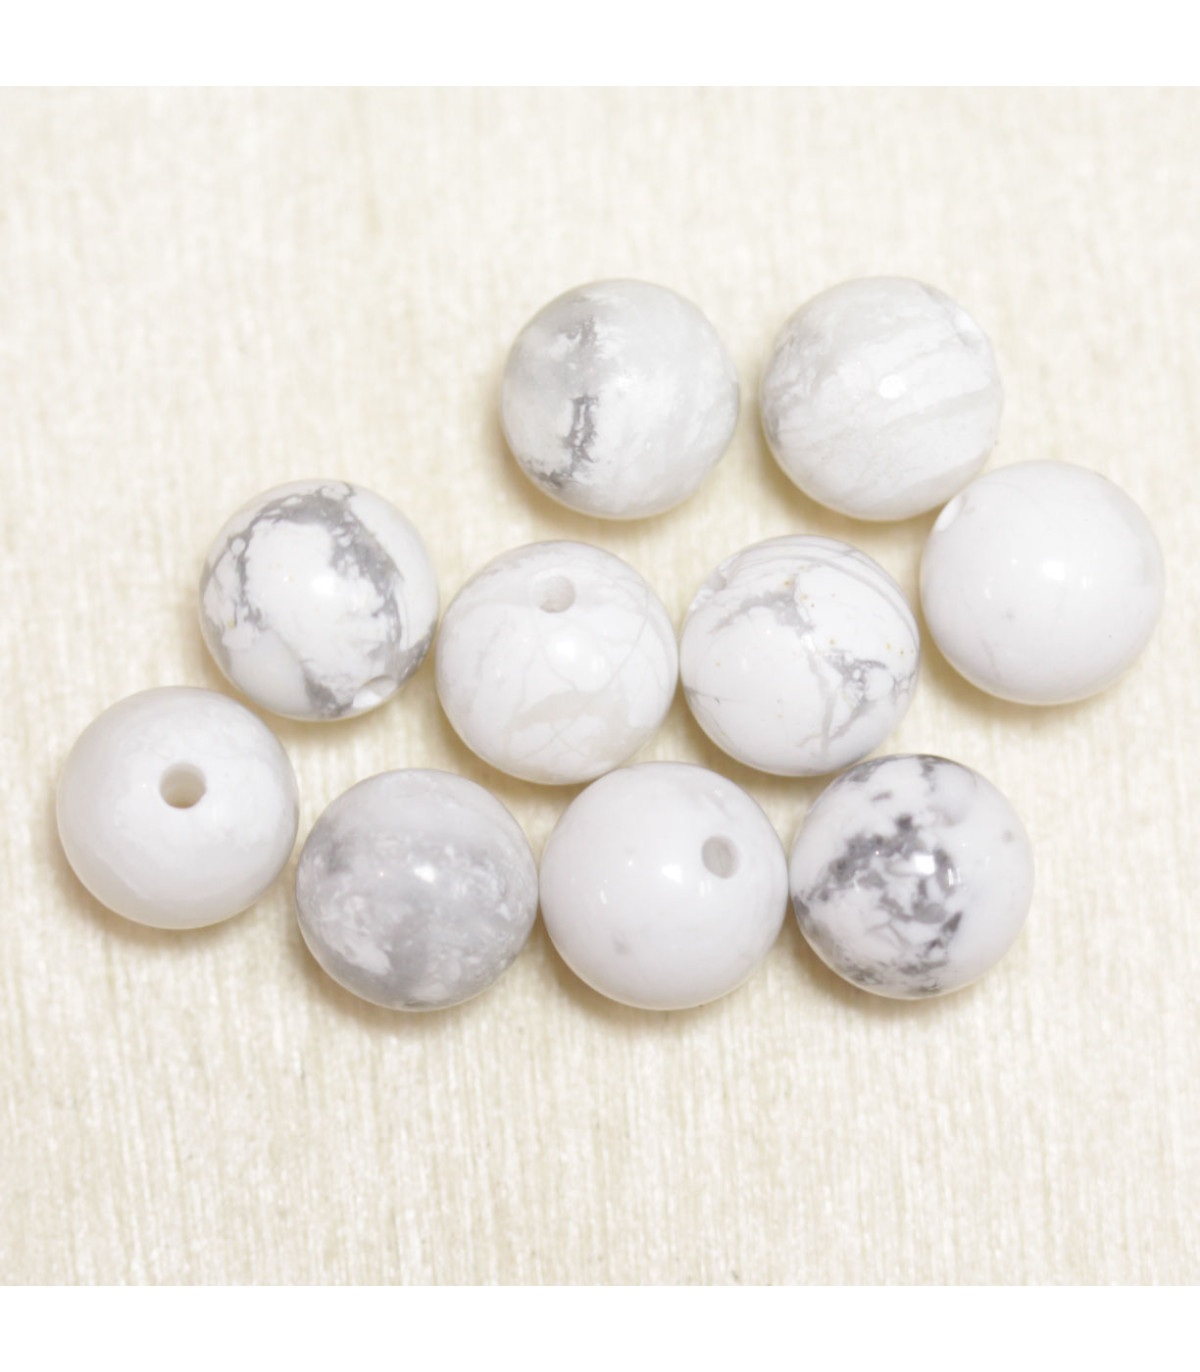 Perles magnésite naturelle pour création bijoux en pierre naturelle. Diam 8  mm